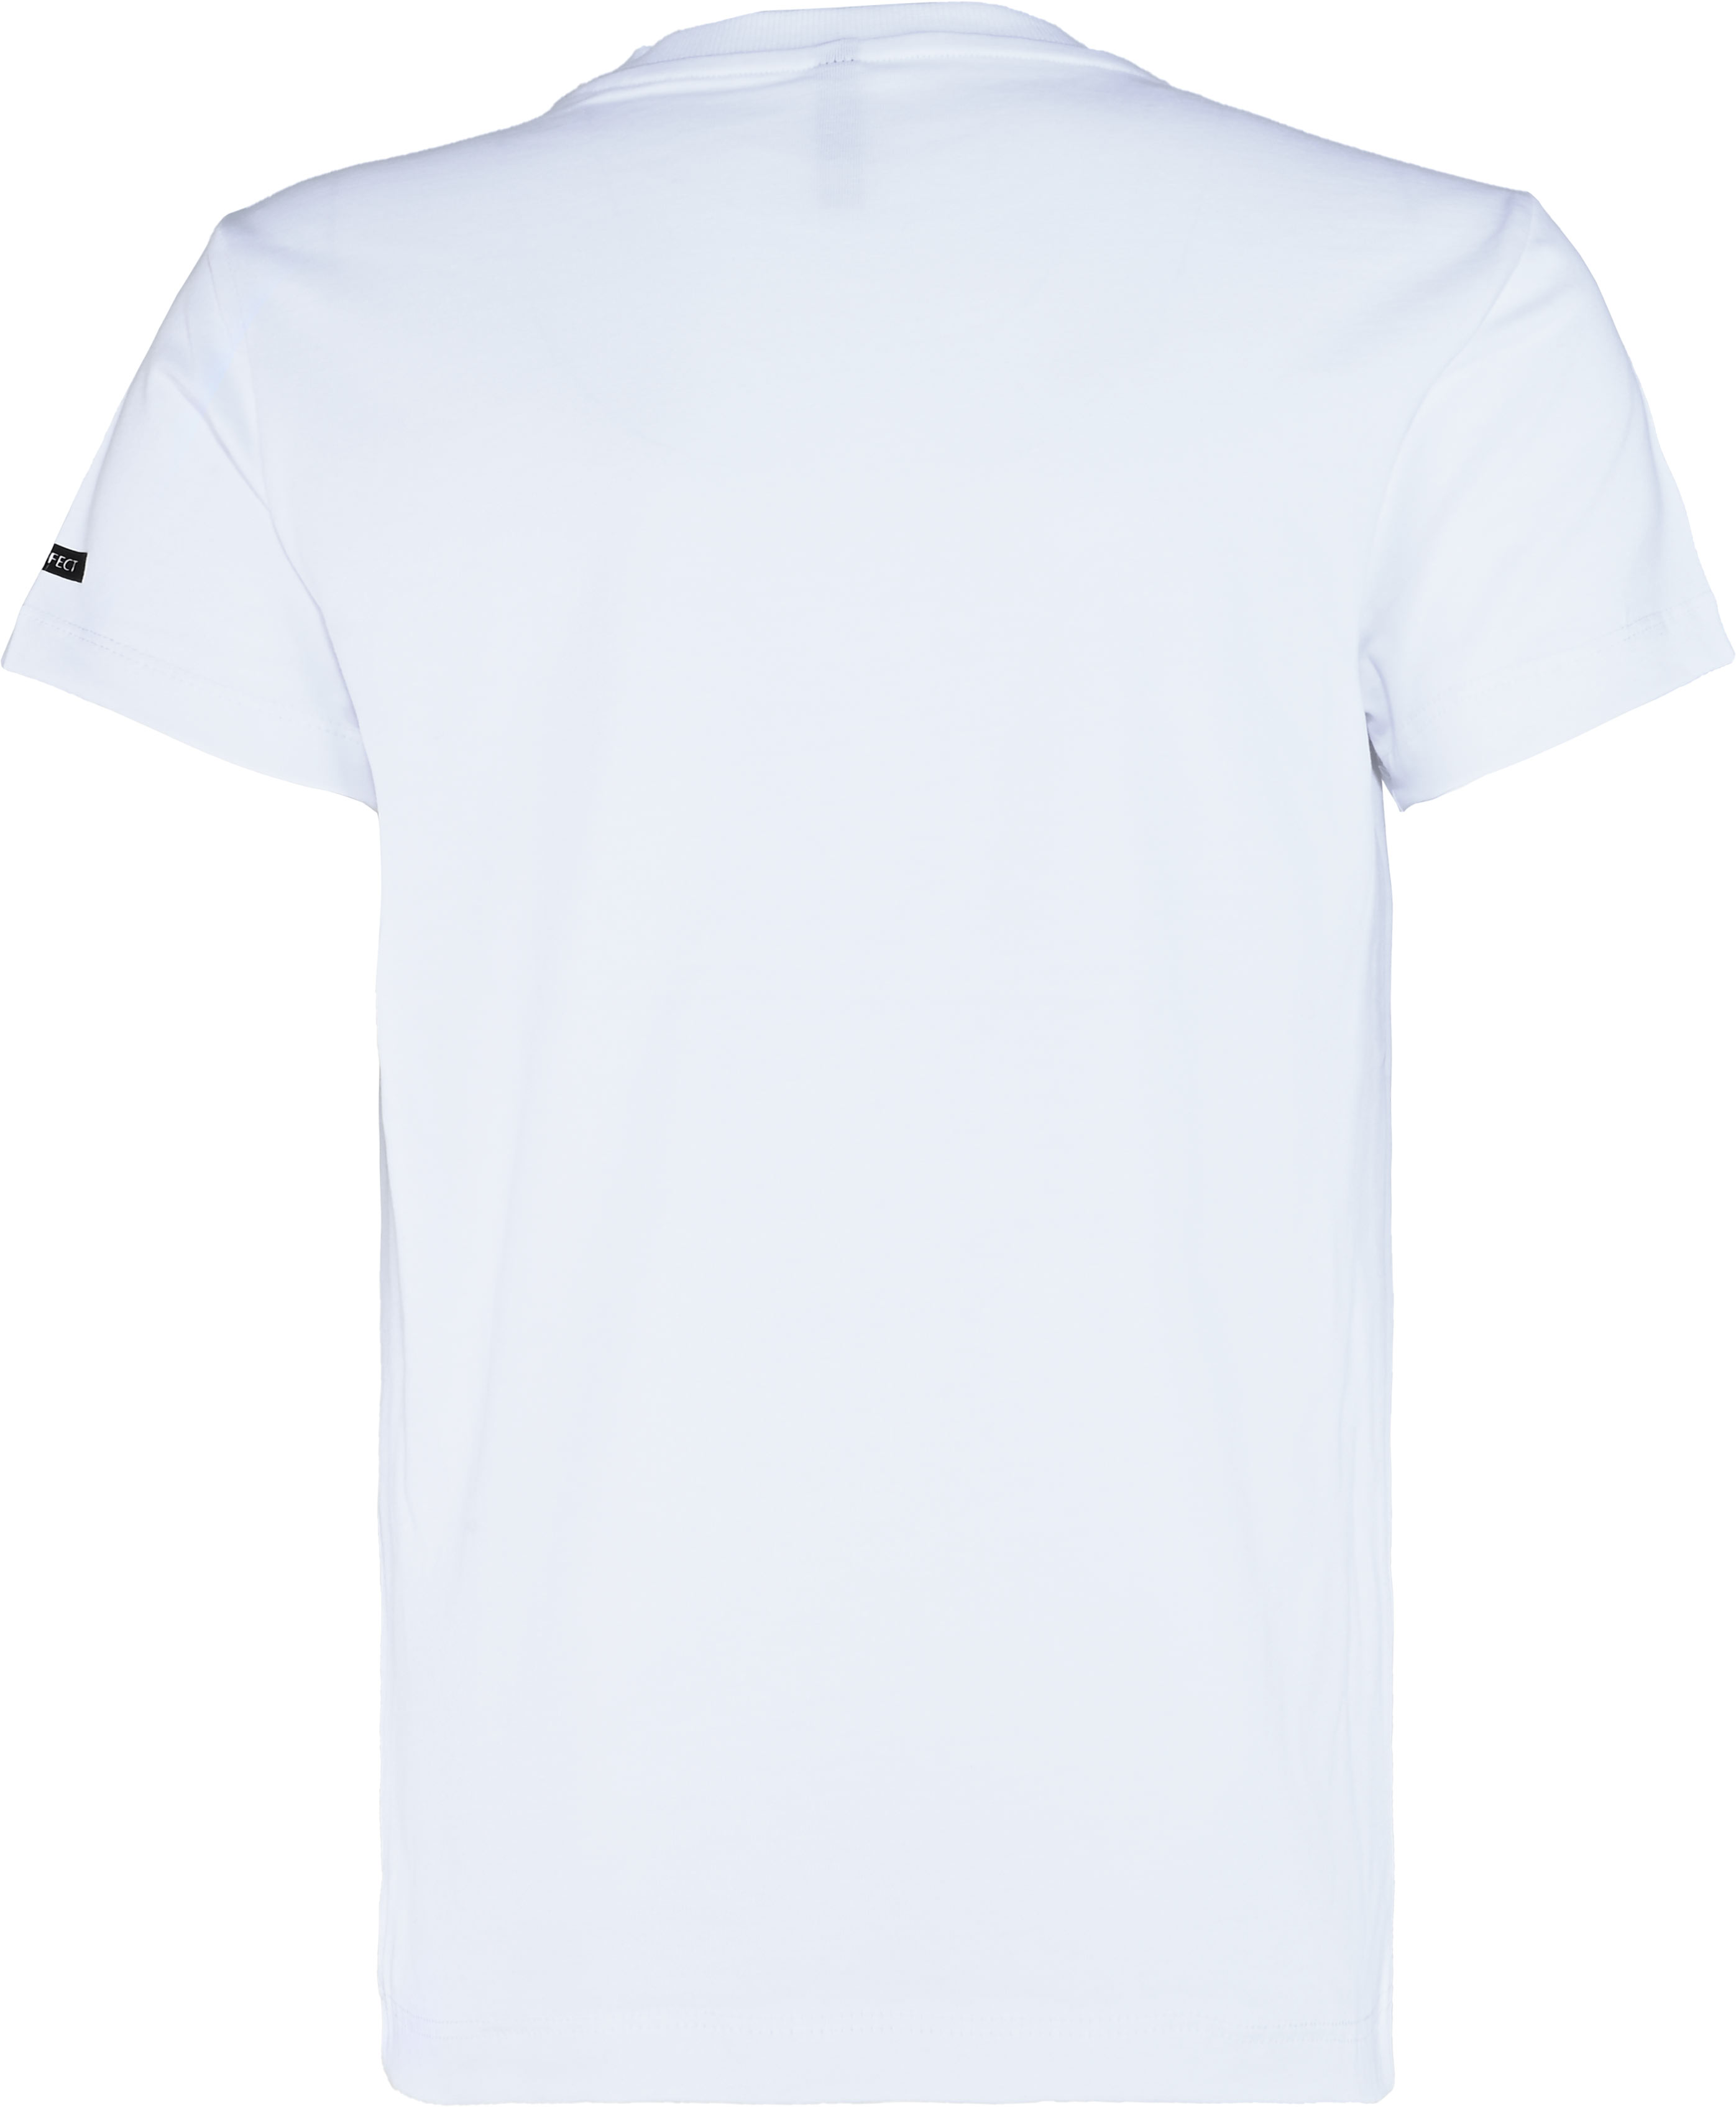 6320-Boys T-Shirt